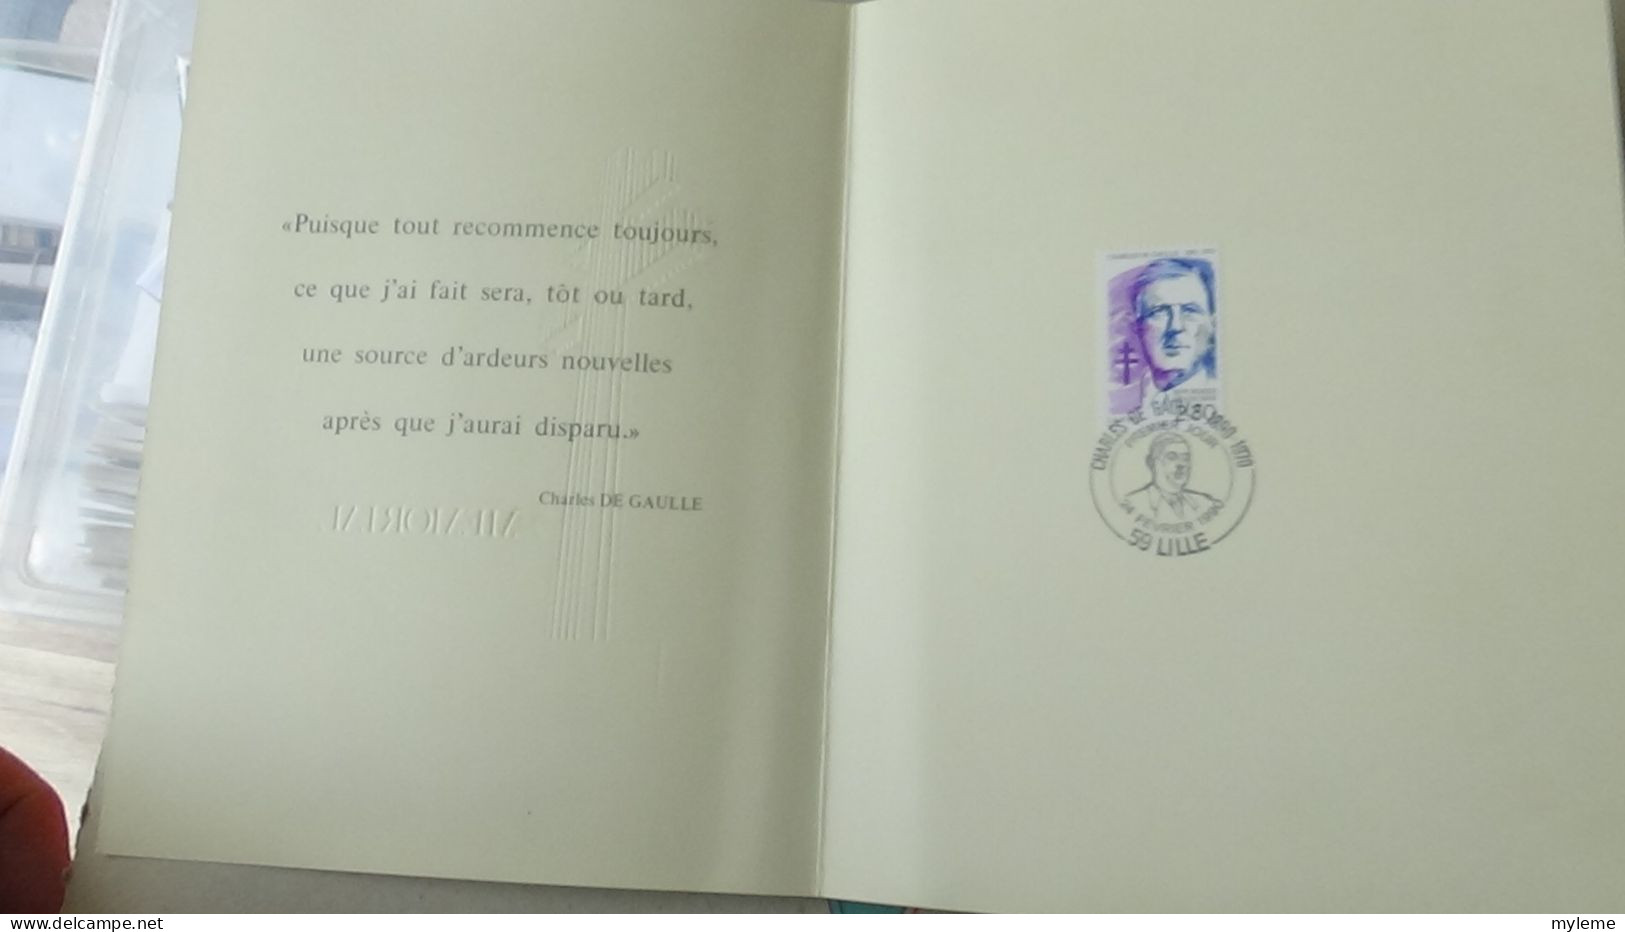 BG7 Très belle étude sur le général De Gaulle en timbres, blocs, enveloppes et documents philatéliques. A saisir !!!